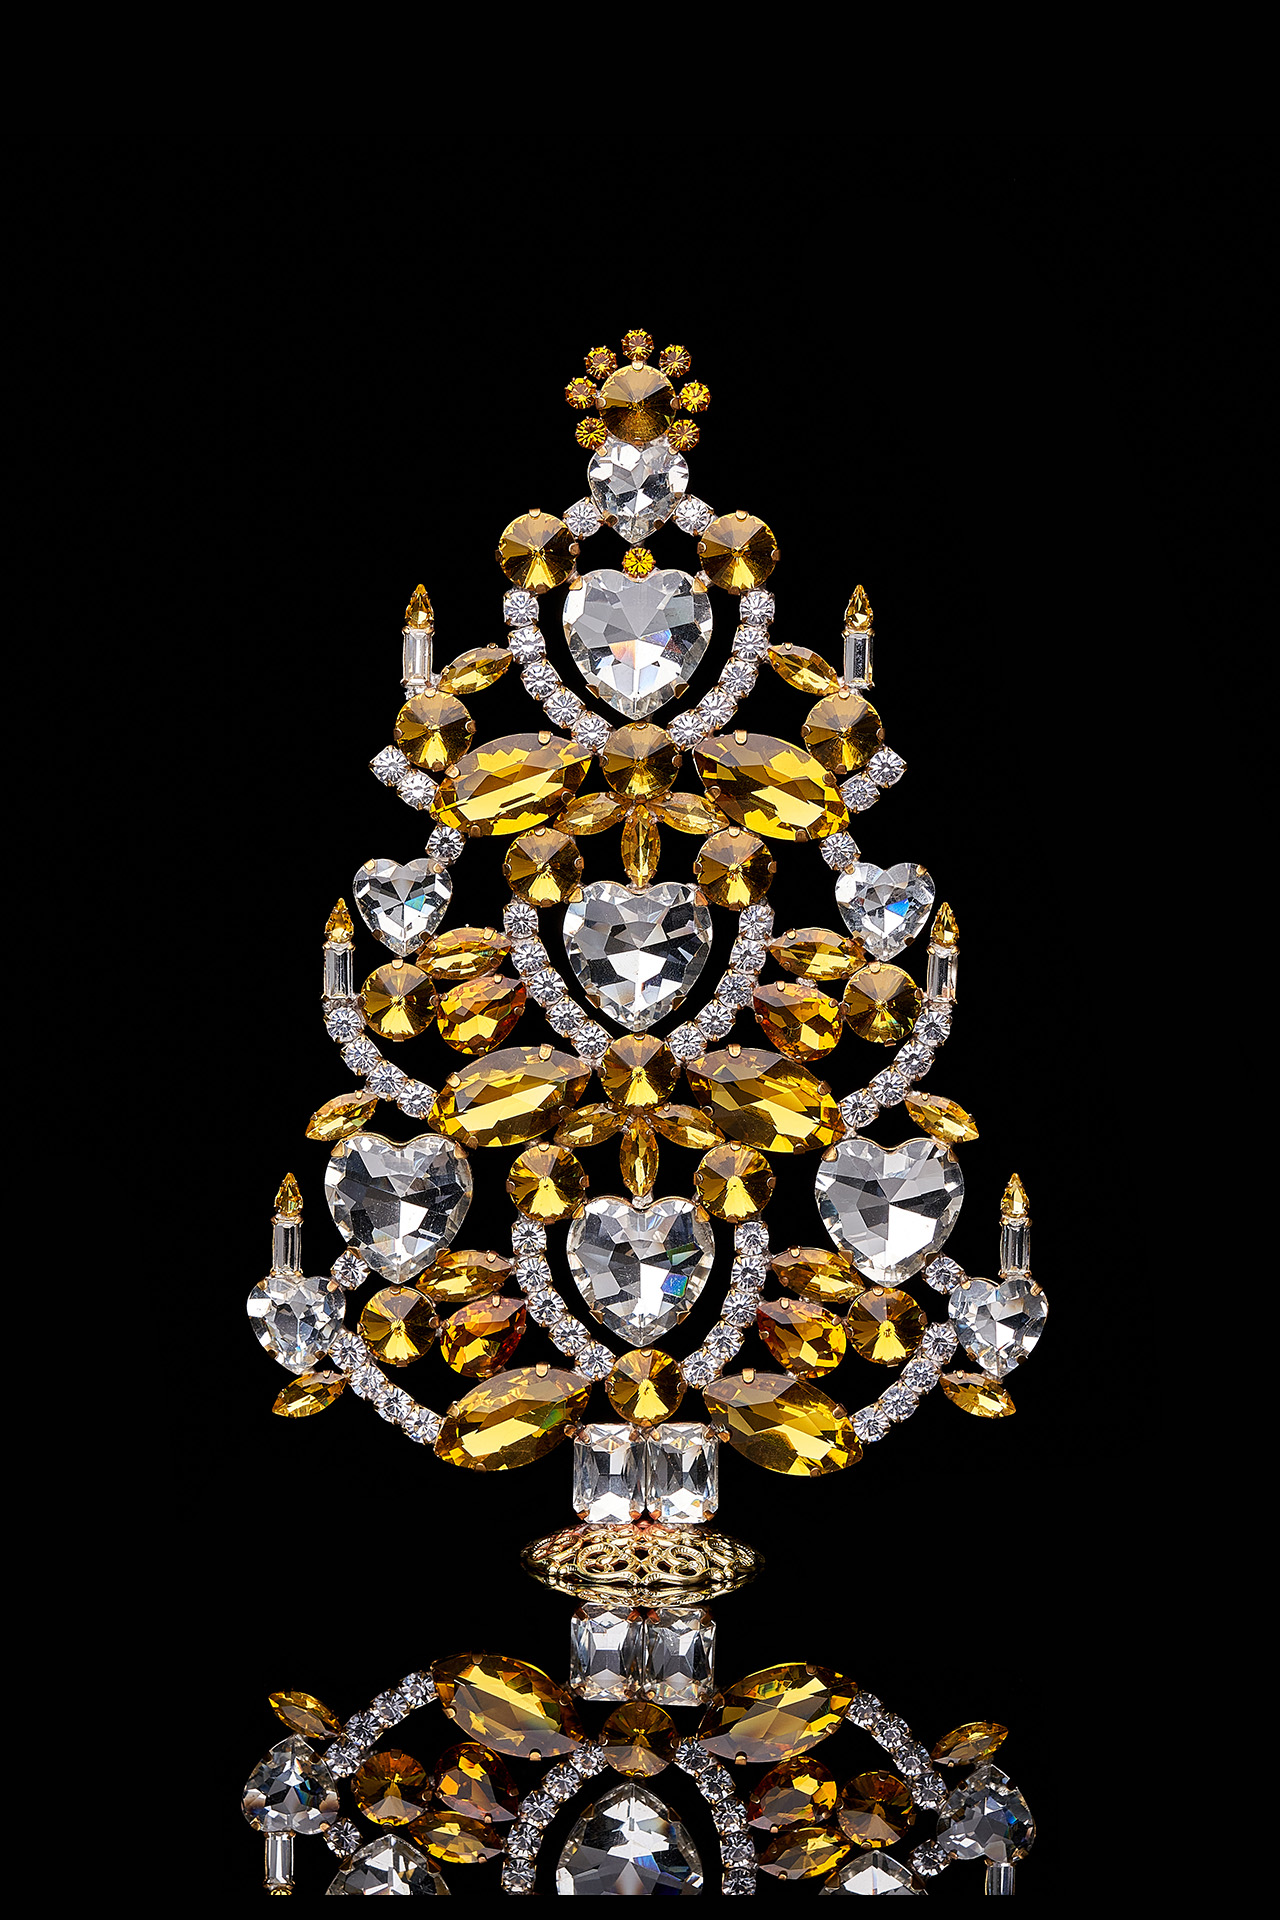 Handmade Christmas tree with yellow crystal